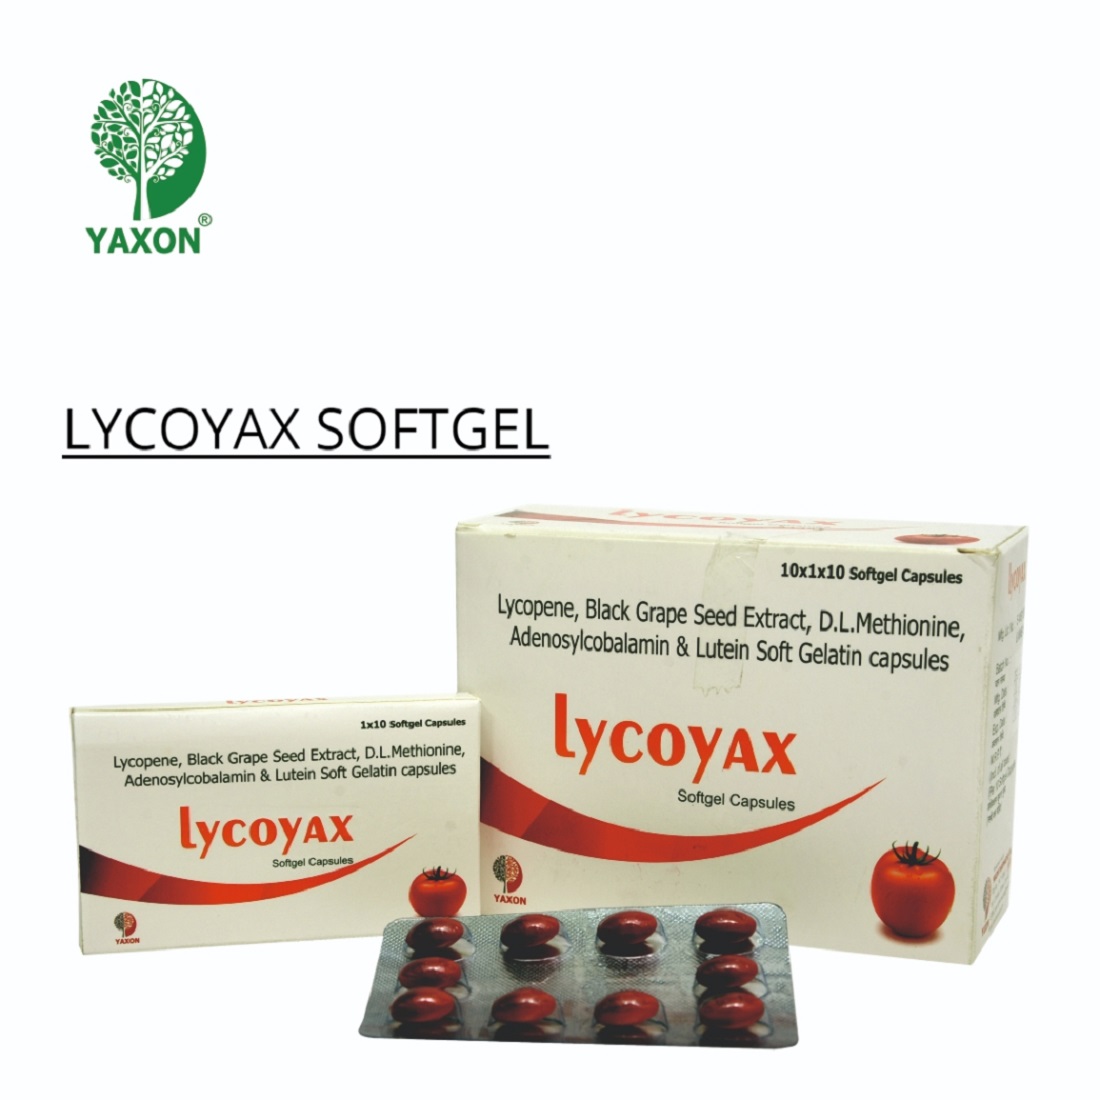 YAXON LYCOYAX Softgel Capsules